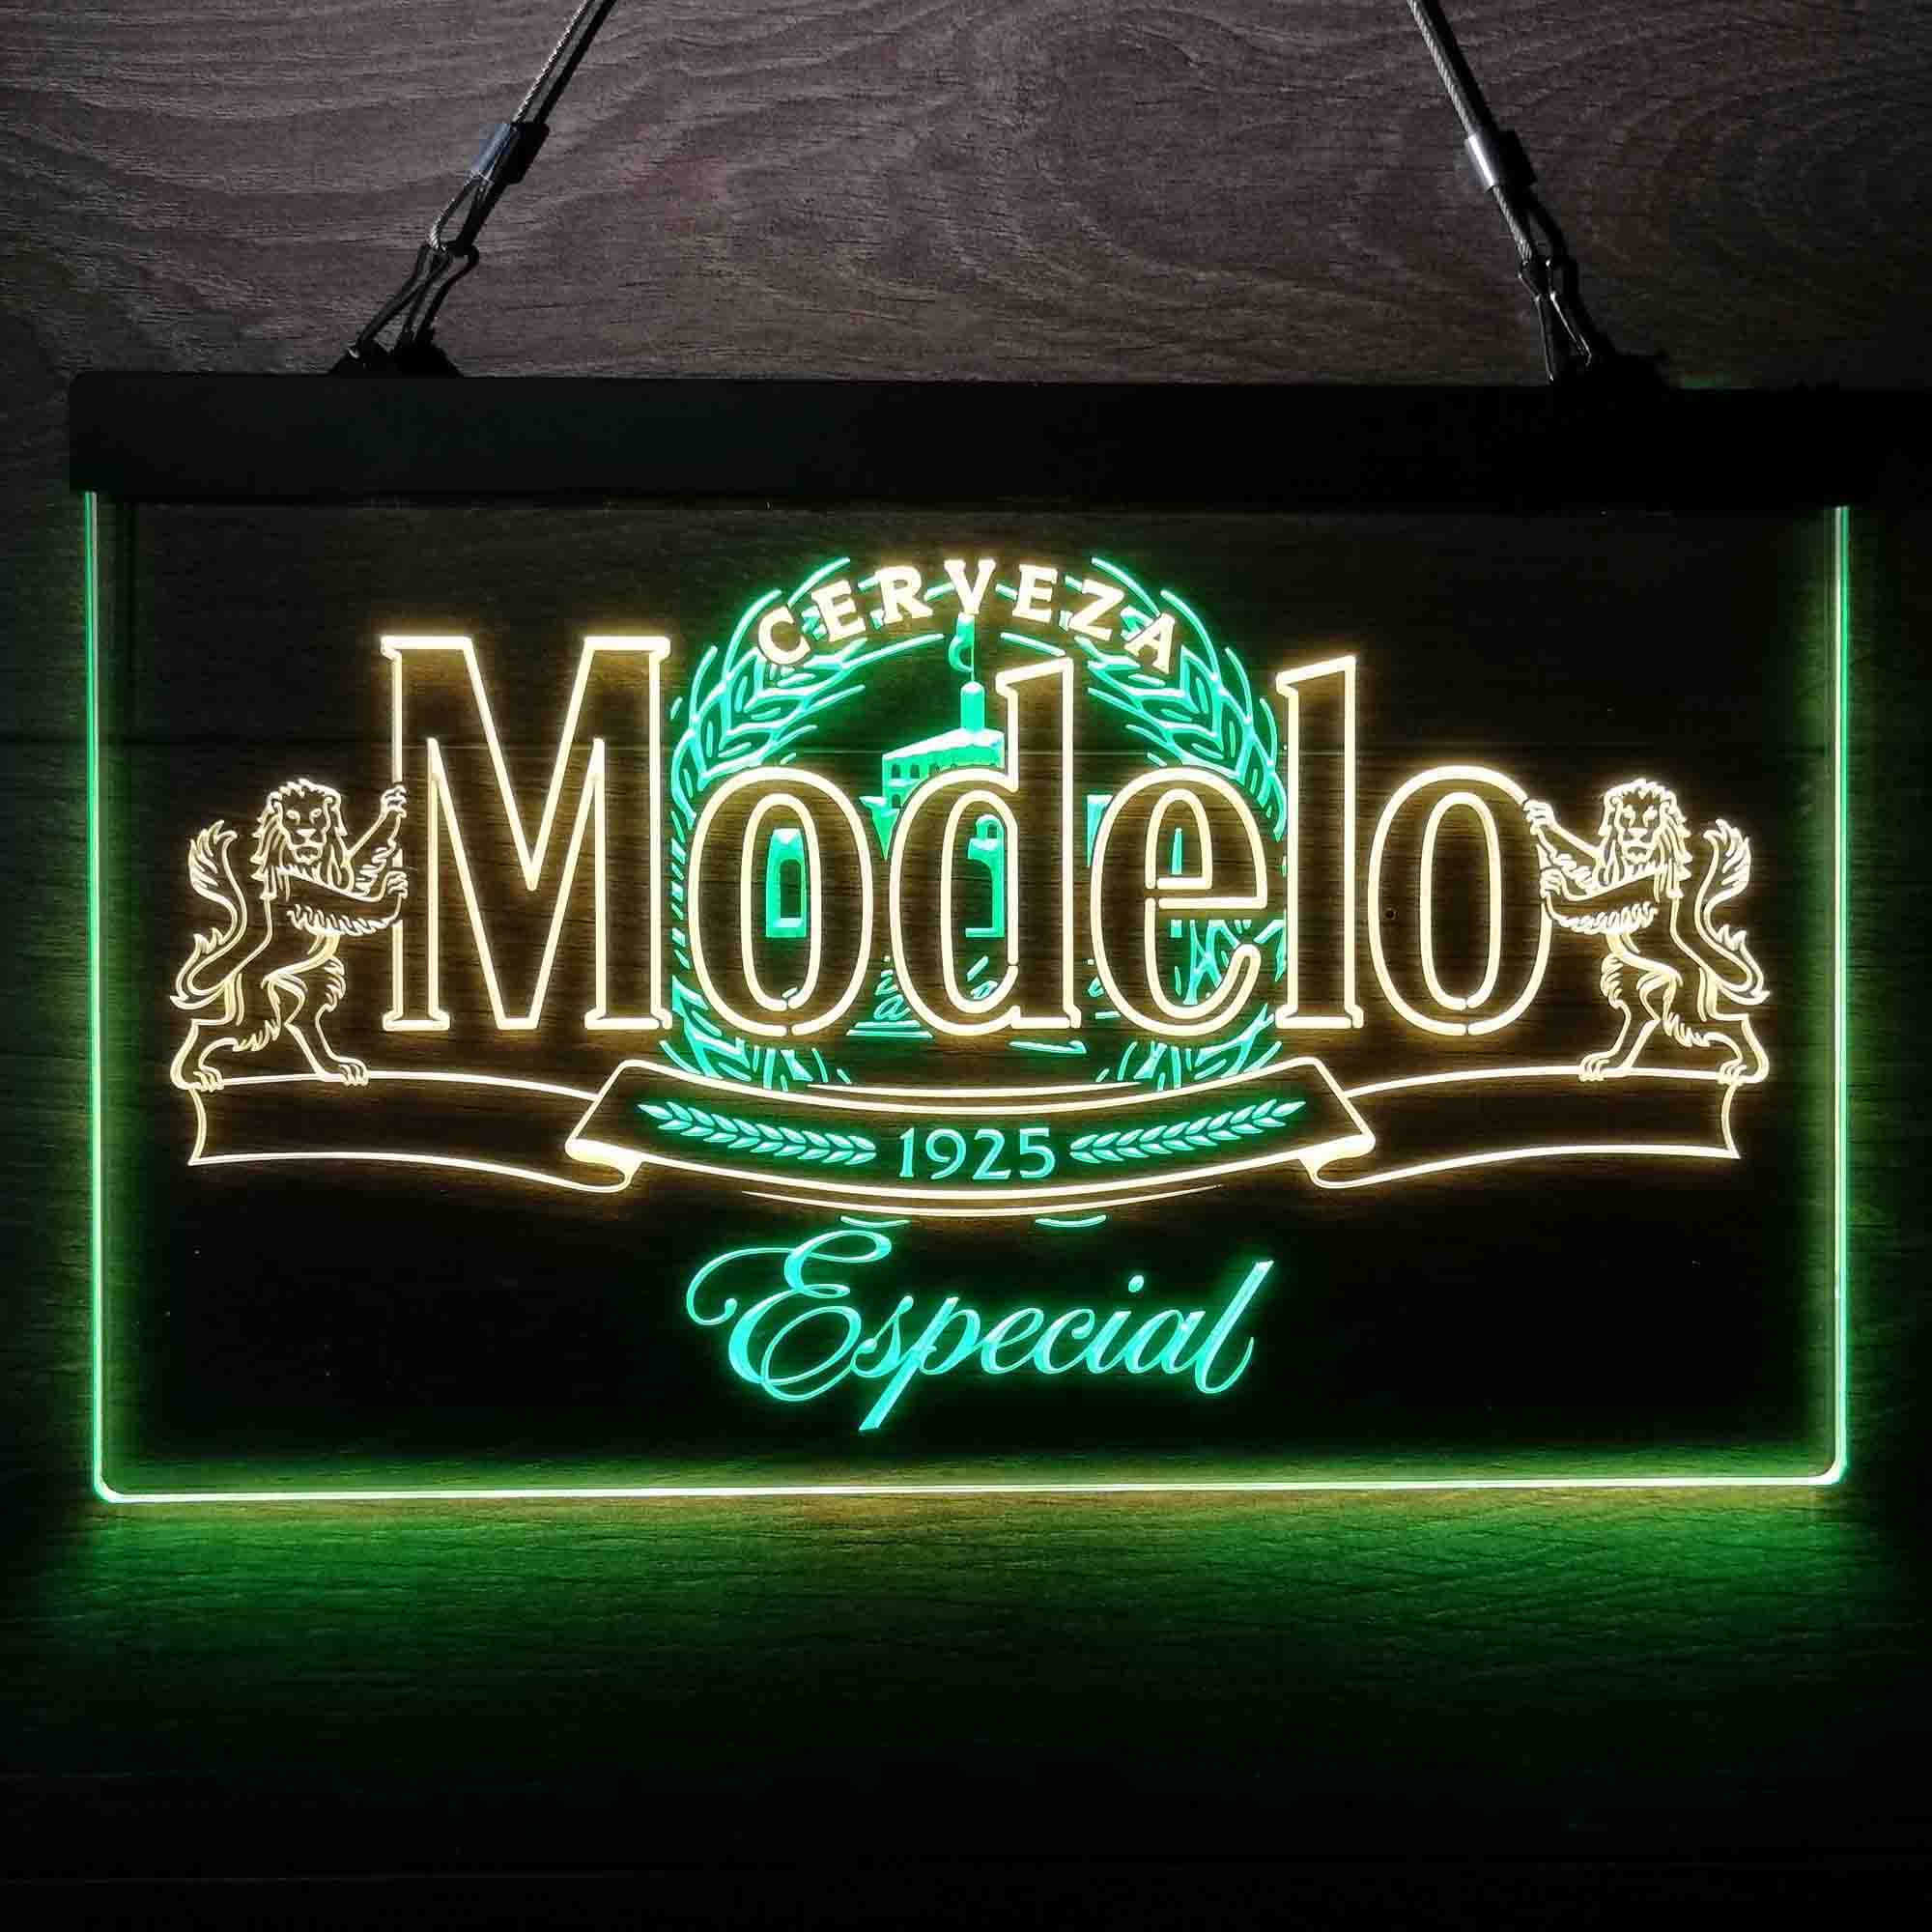 Modelos Especials 1925 LED Neon Sign